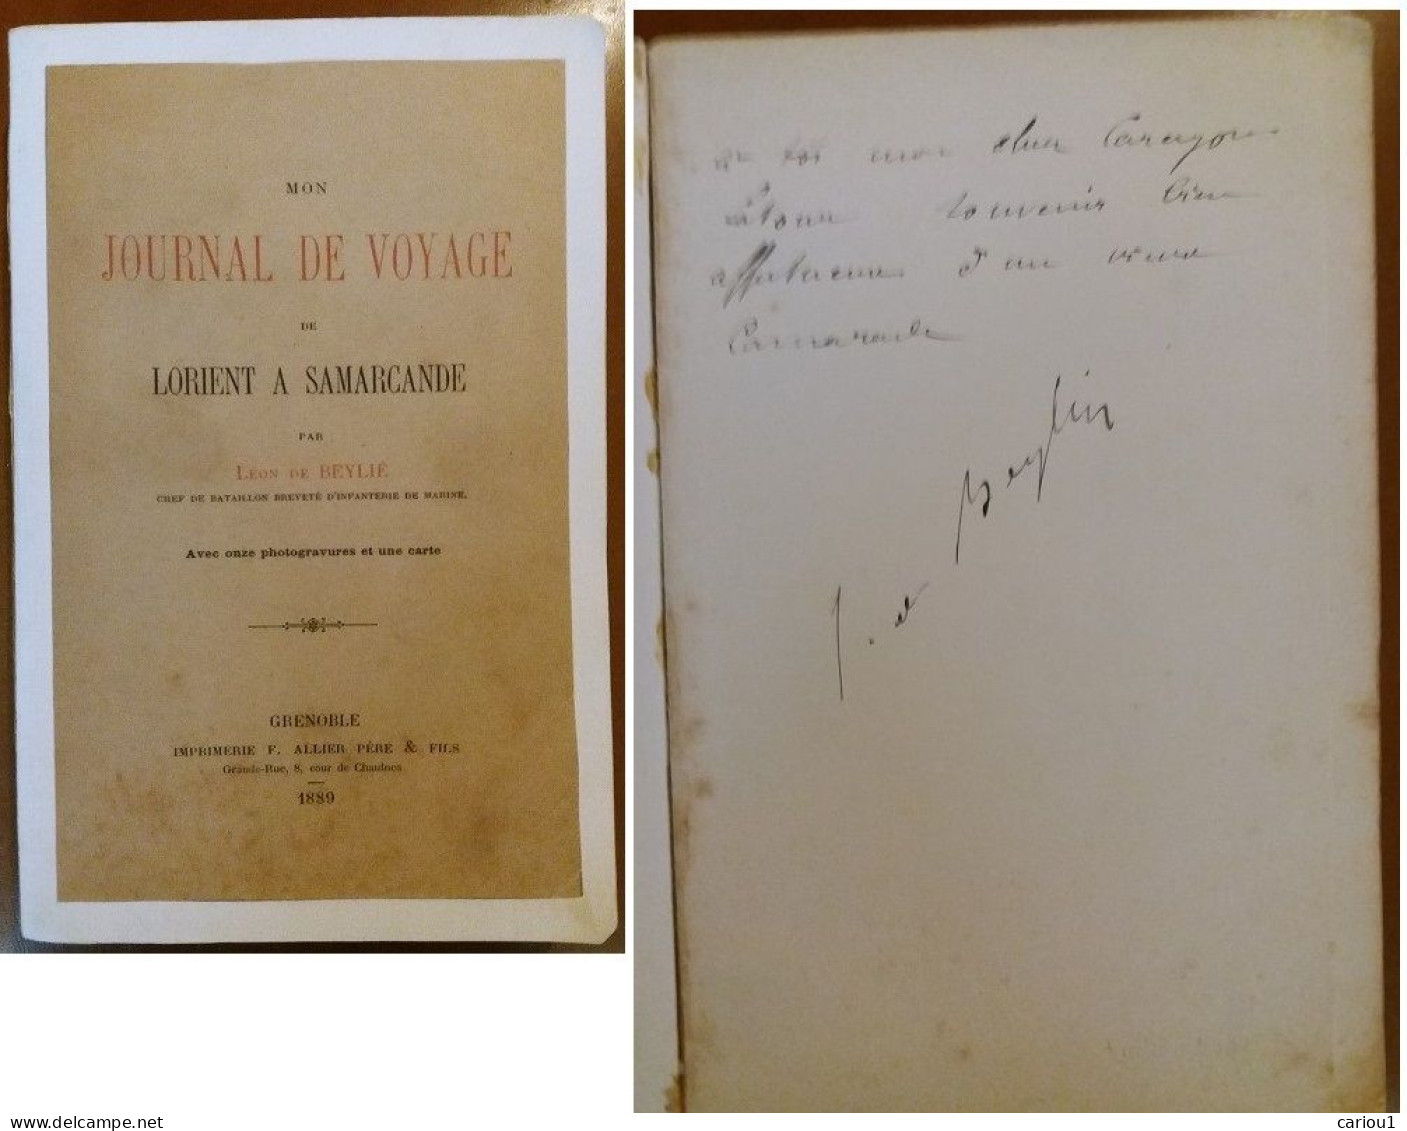 C1 Leon De BEYLIE Voyage LORIENT SAMARCANDE Musee GRENOBLE Signed DEDICACE Envoi Port Inclus France - Libri Con Dedica